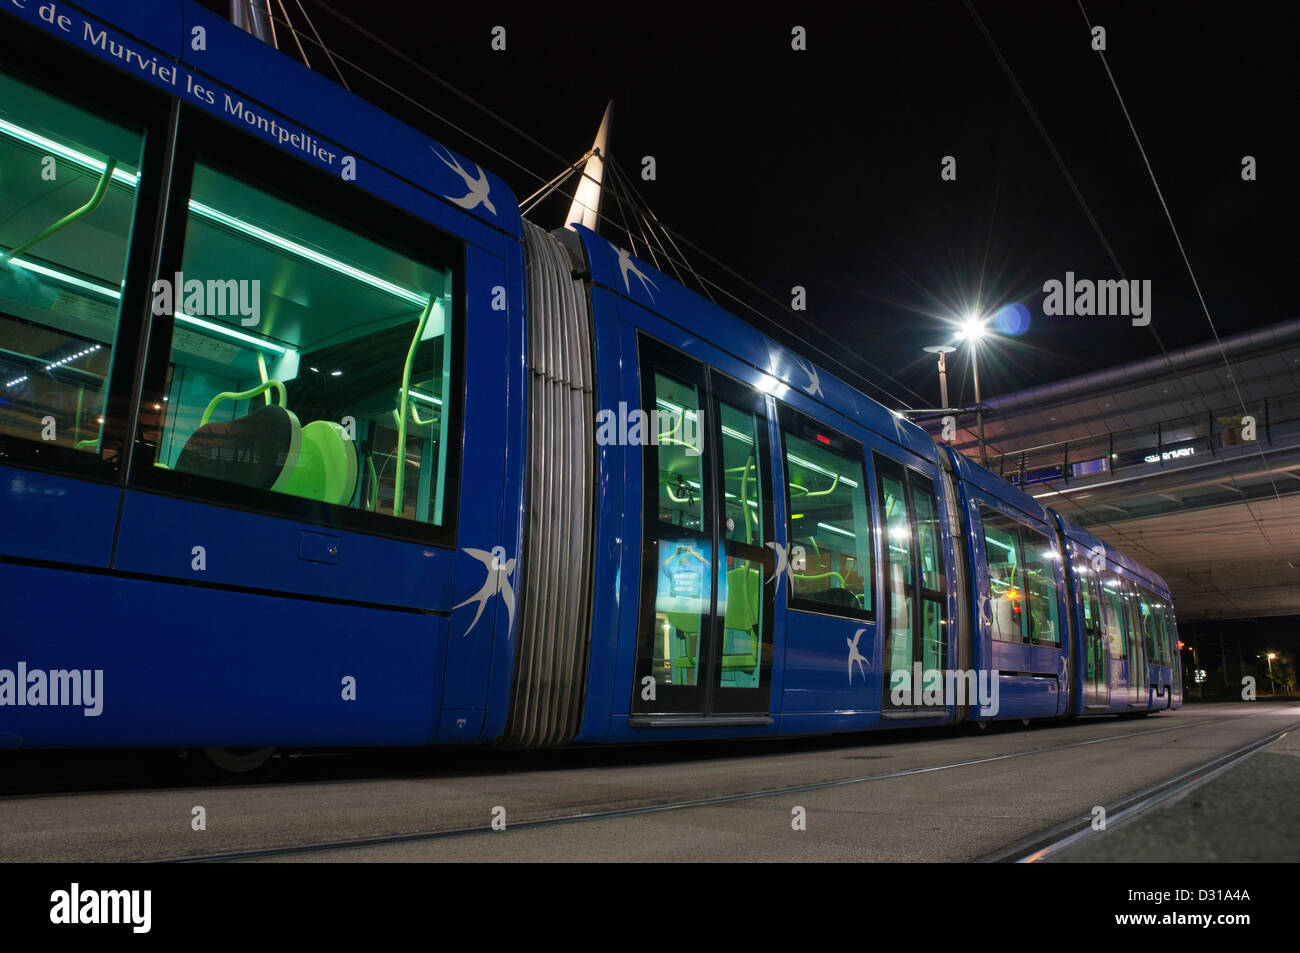 Le Tram au quai, de nuit, Montpellier, France Banque D'Images